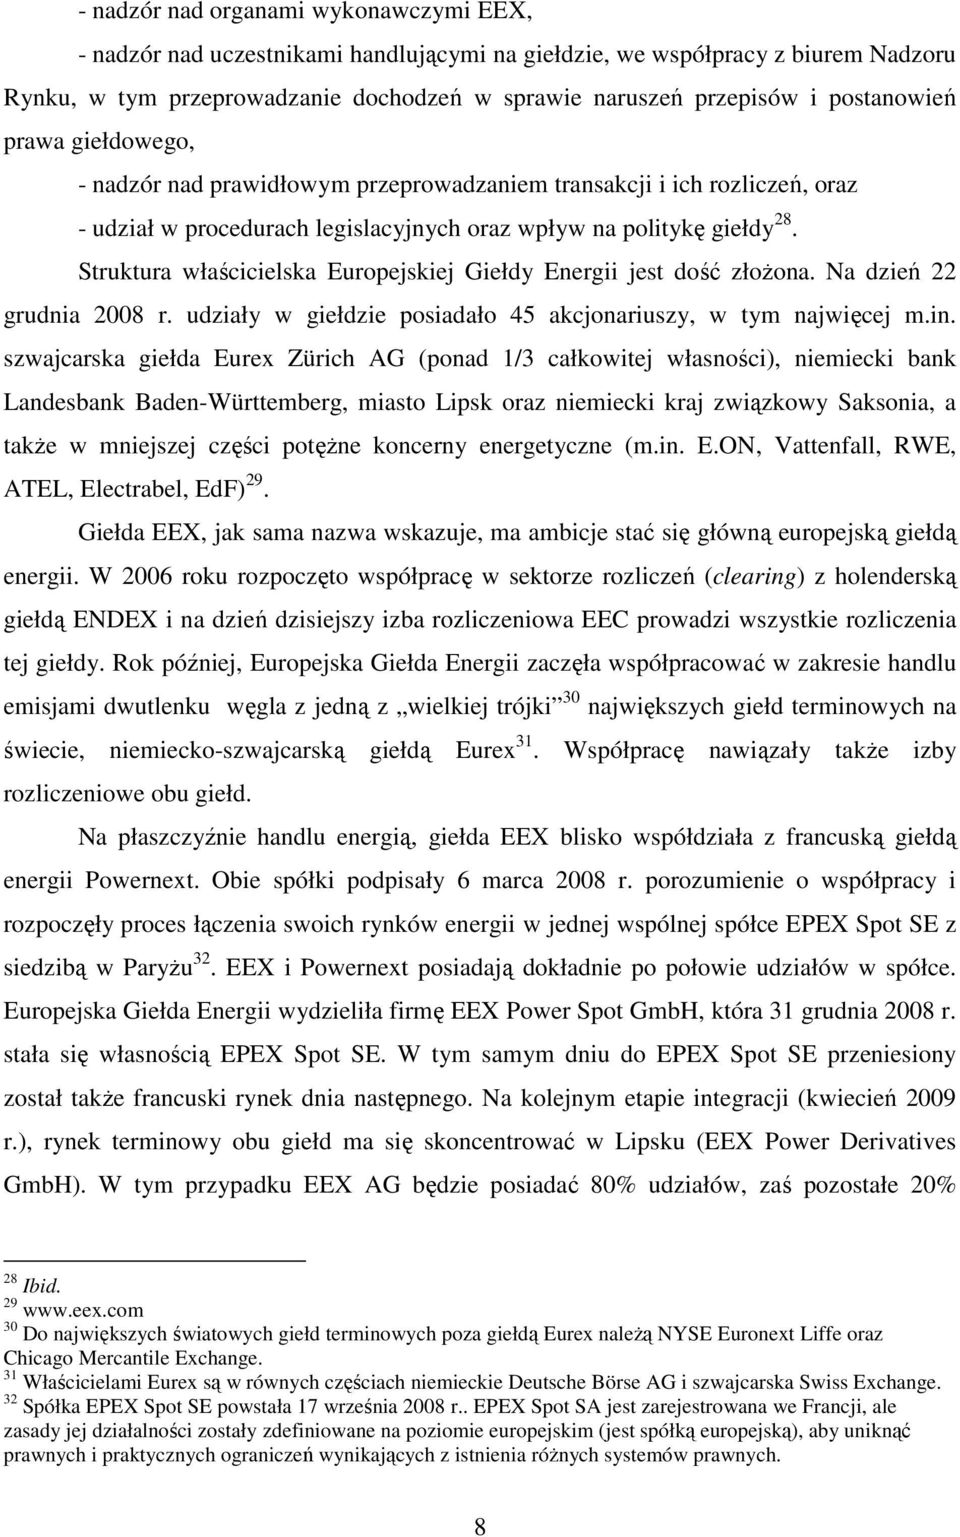 Struktura właścicielska Europejskiej Giełdy Energii jest dość złoŝona. Na dzień 22 grudnia 2008 r. udziały w giełdzie posiadało 45 akcjonariuszy, w tym najwięcej m.in.